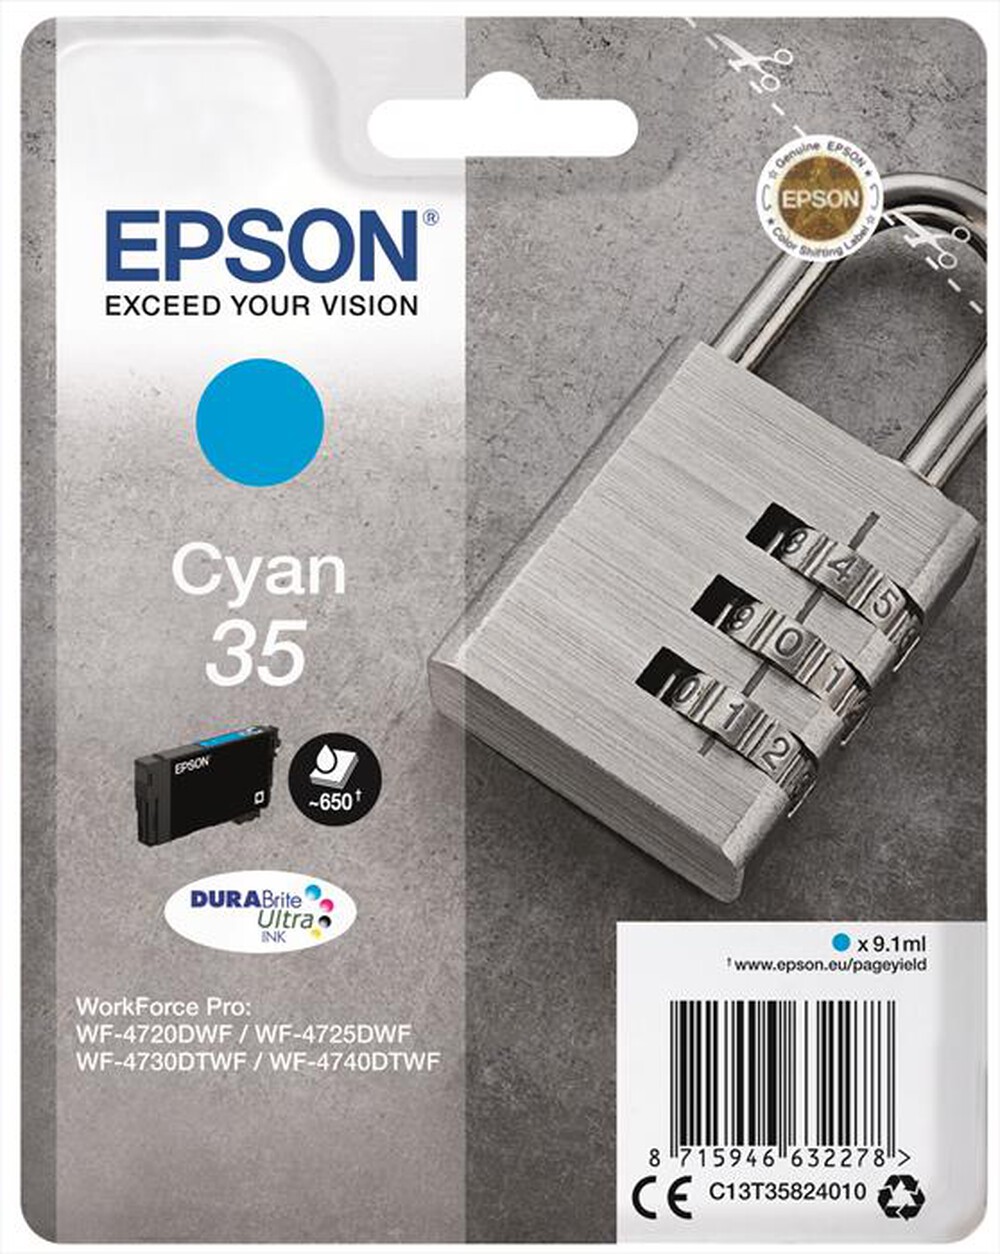 "EPSON - C13T35824020 - Ciano"